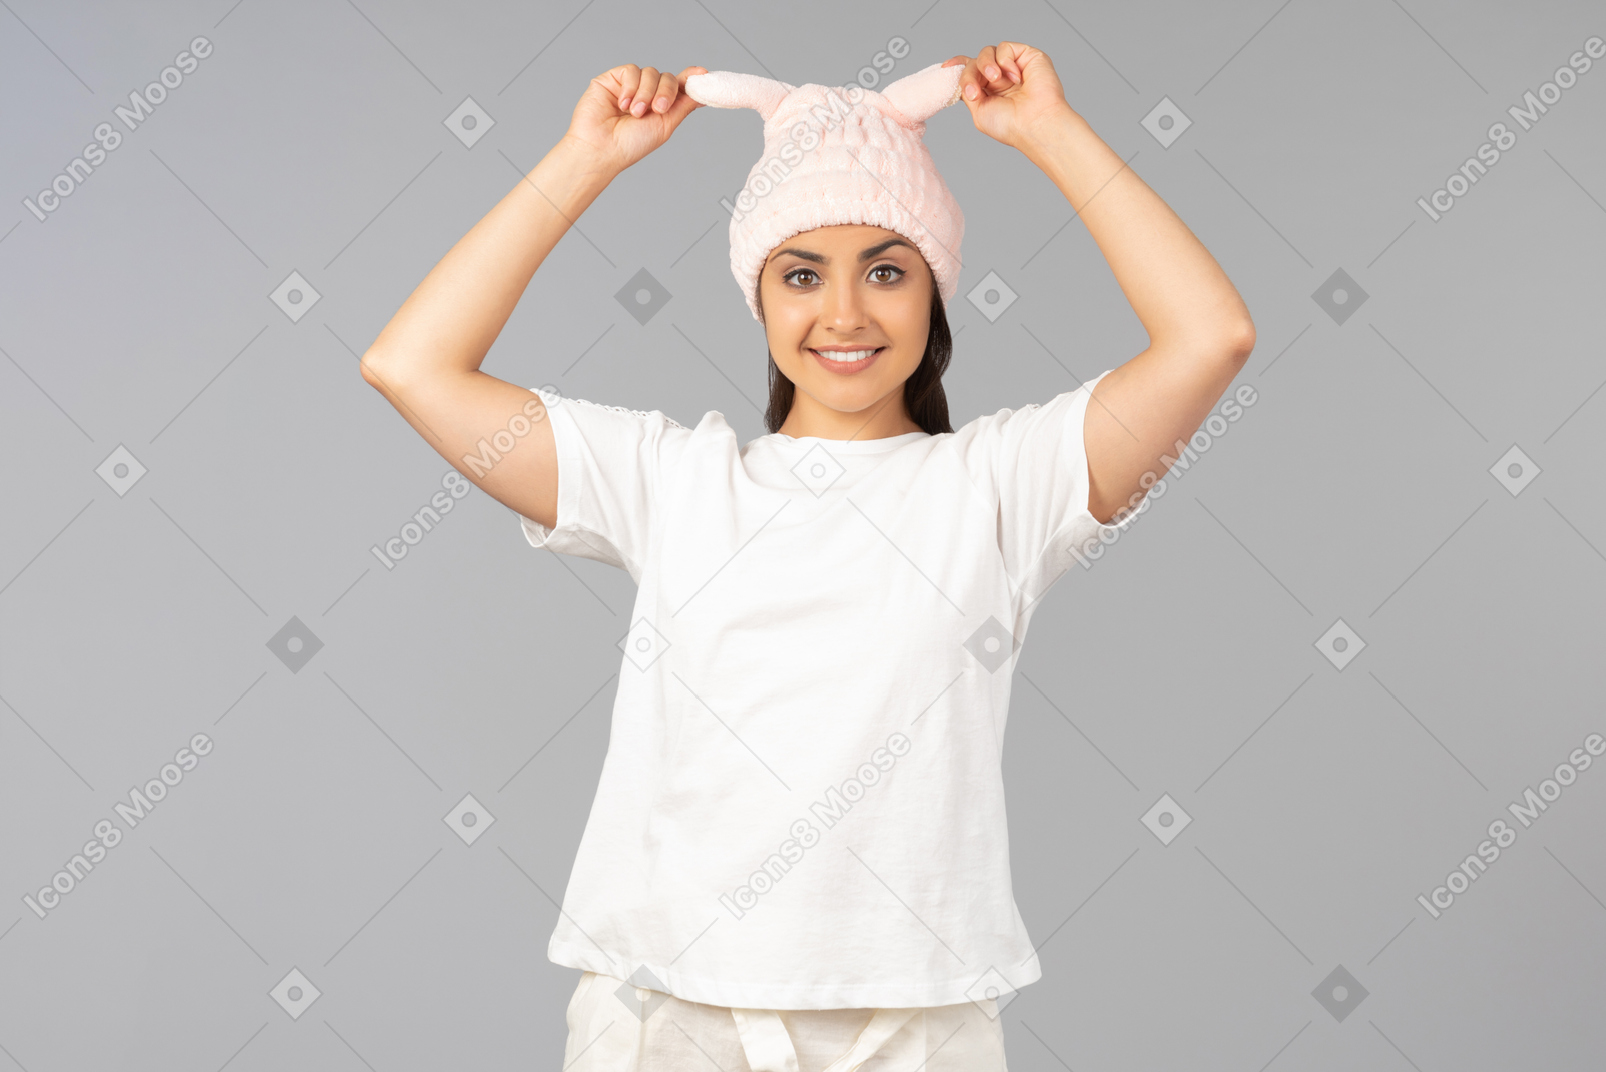 Giovane donna indiana in abiti domestici toccando coniglio rosa come il cappello che indossa